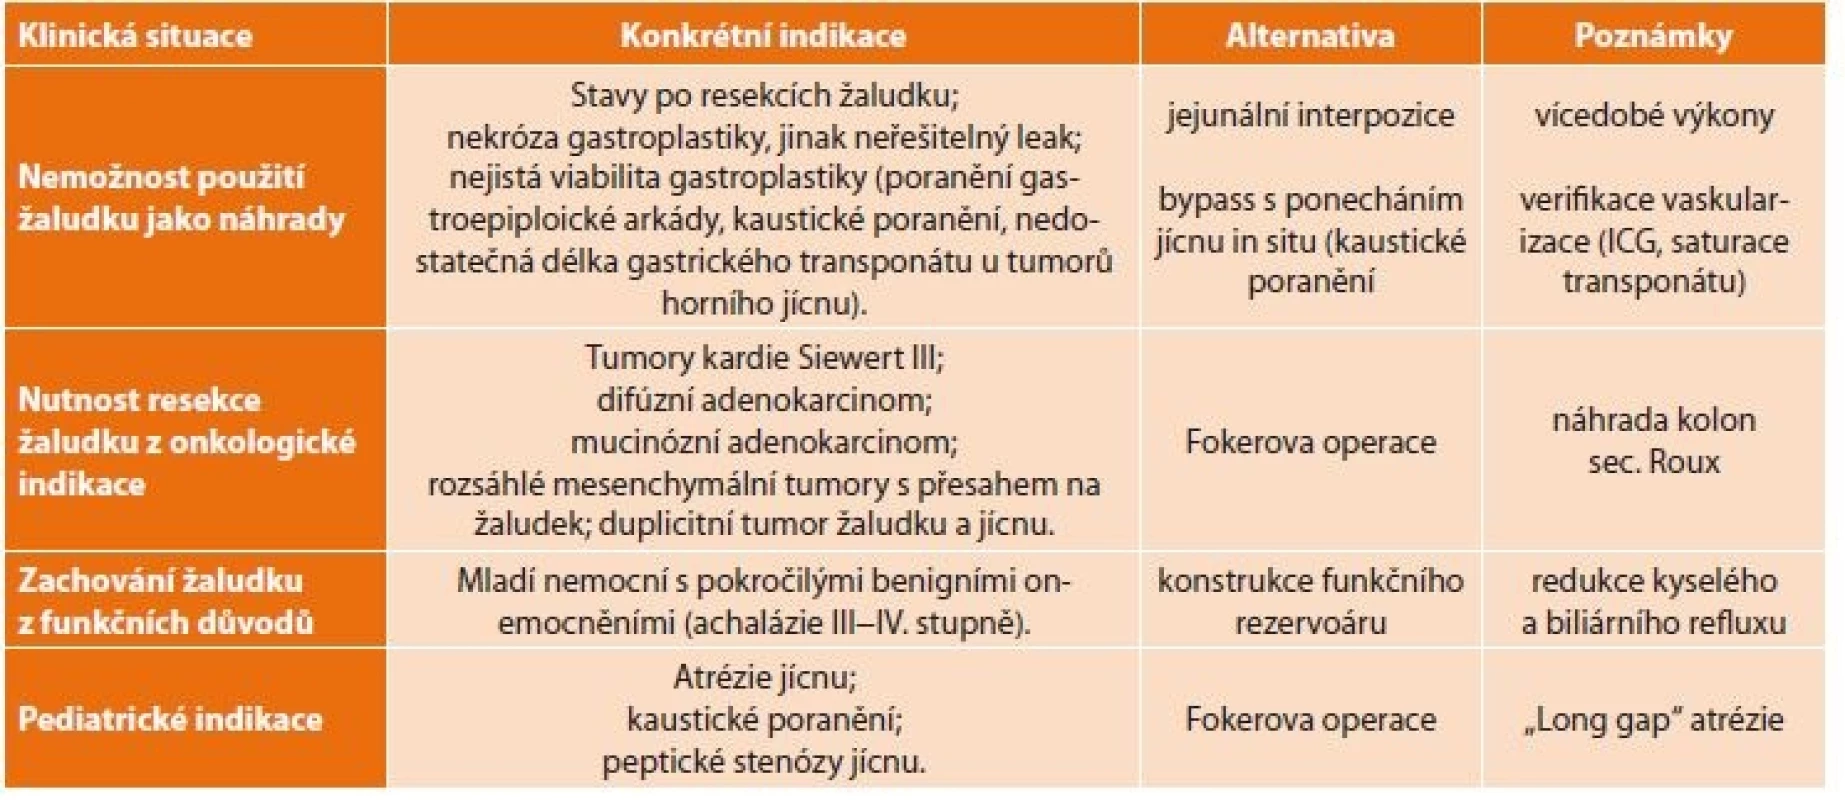 Indikace náhrady jícnu tlustým střevem<br>
Tab. 1: Indications of esophageal replacement with the large intestine